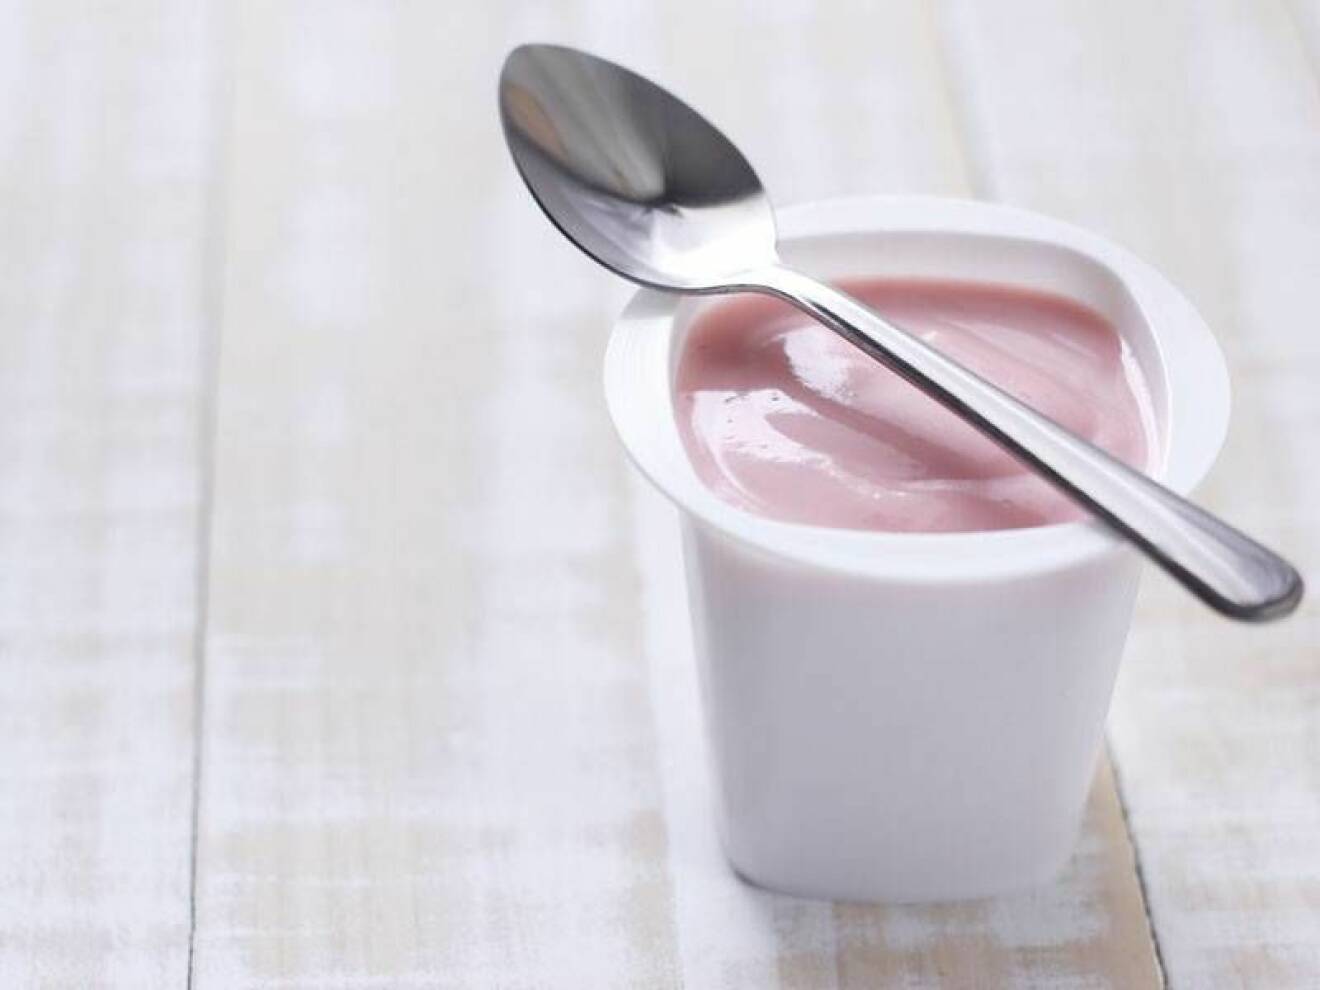 Yoghurt innehåller mycket nyttigheter som proteiner och kalcium, men om du har en tendens att bli gasig och svullen i magen är det inte ett bra val. Många är nämligen känsliga för laktos så varva produkten med till exempel gröt eller laktosfri yoghurt.